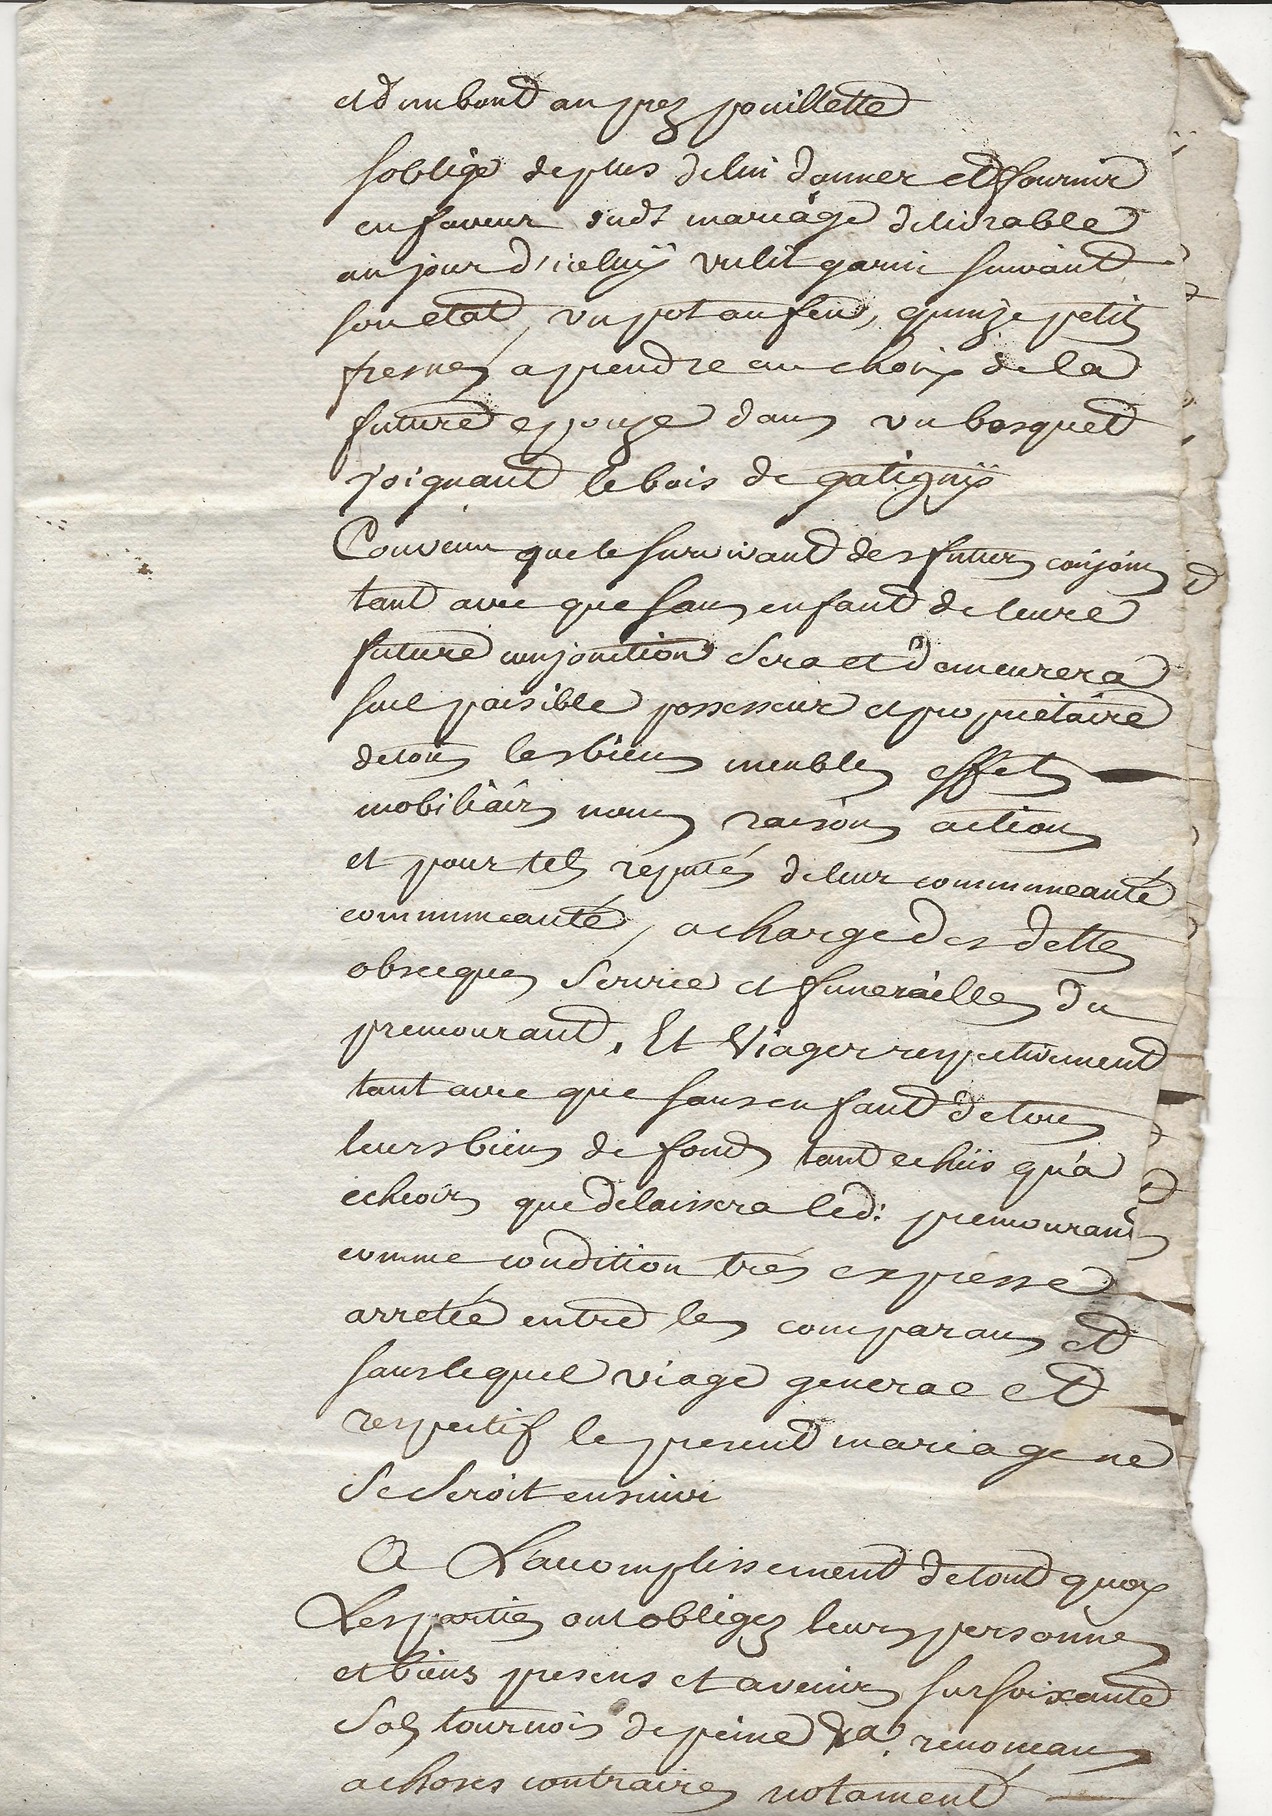 1772 acte partiel moriau jean guislain avec taine jeanne catherine 3 